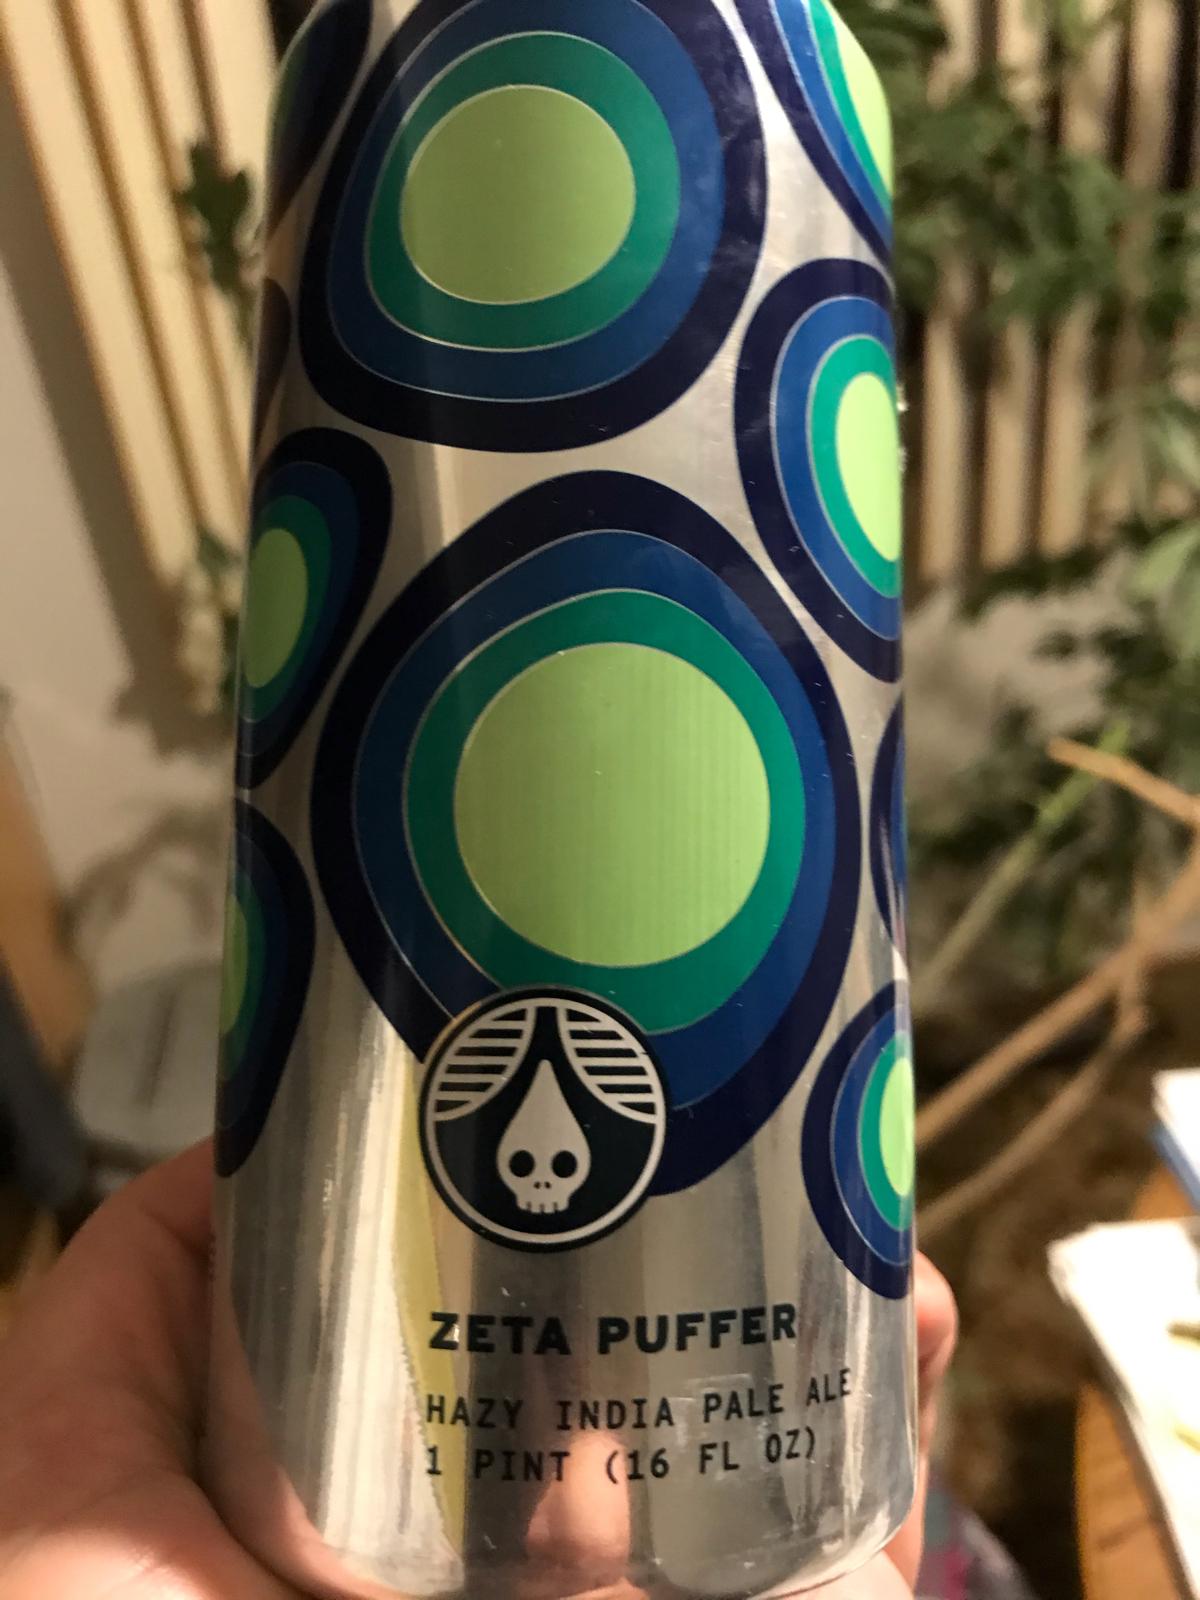 Zeta Puffer